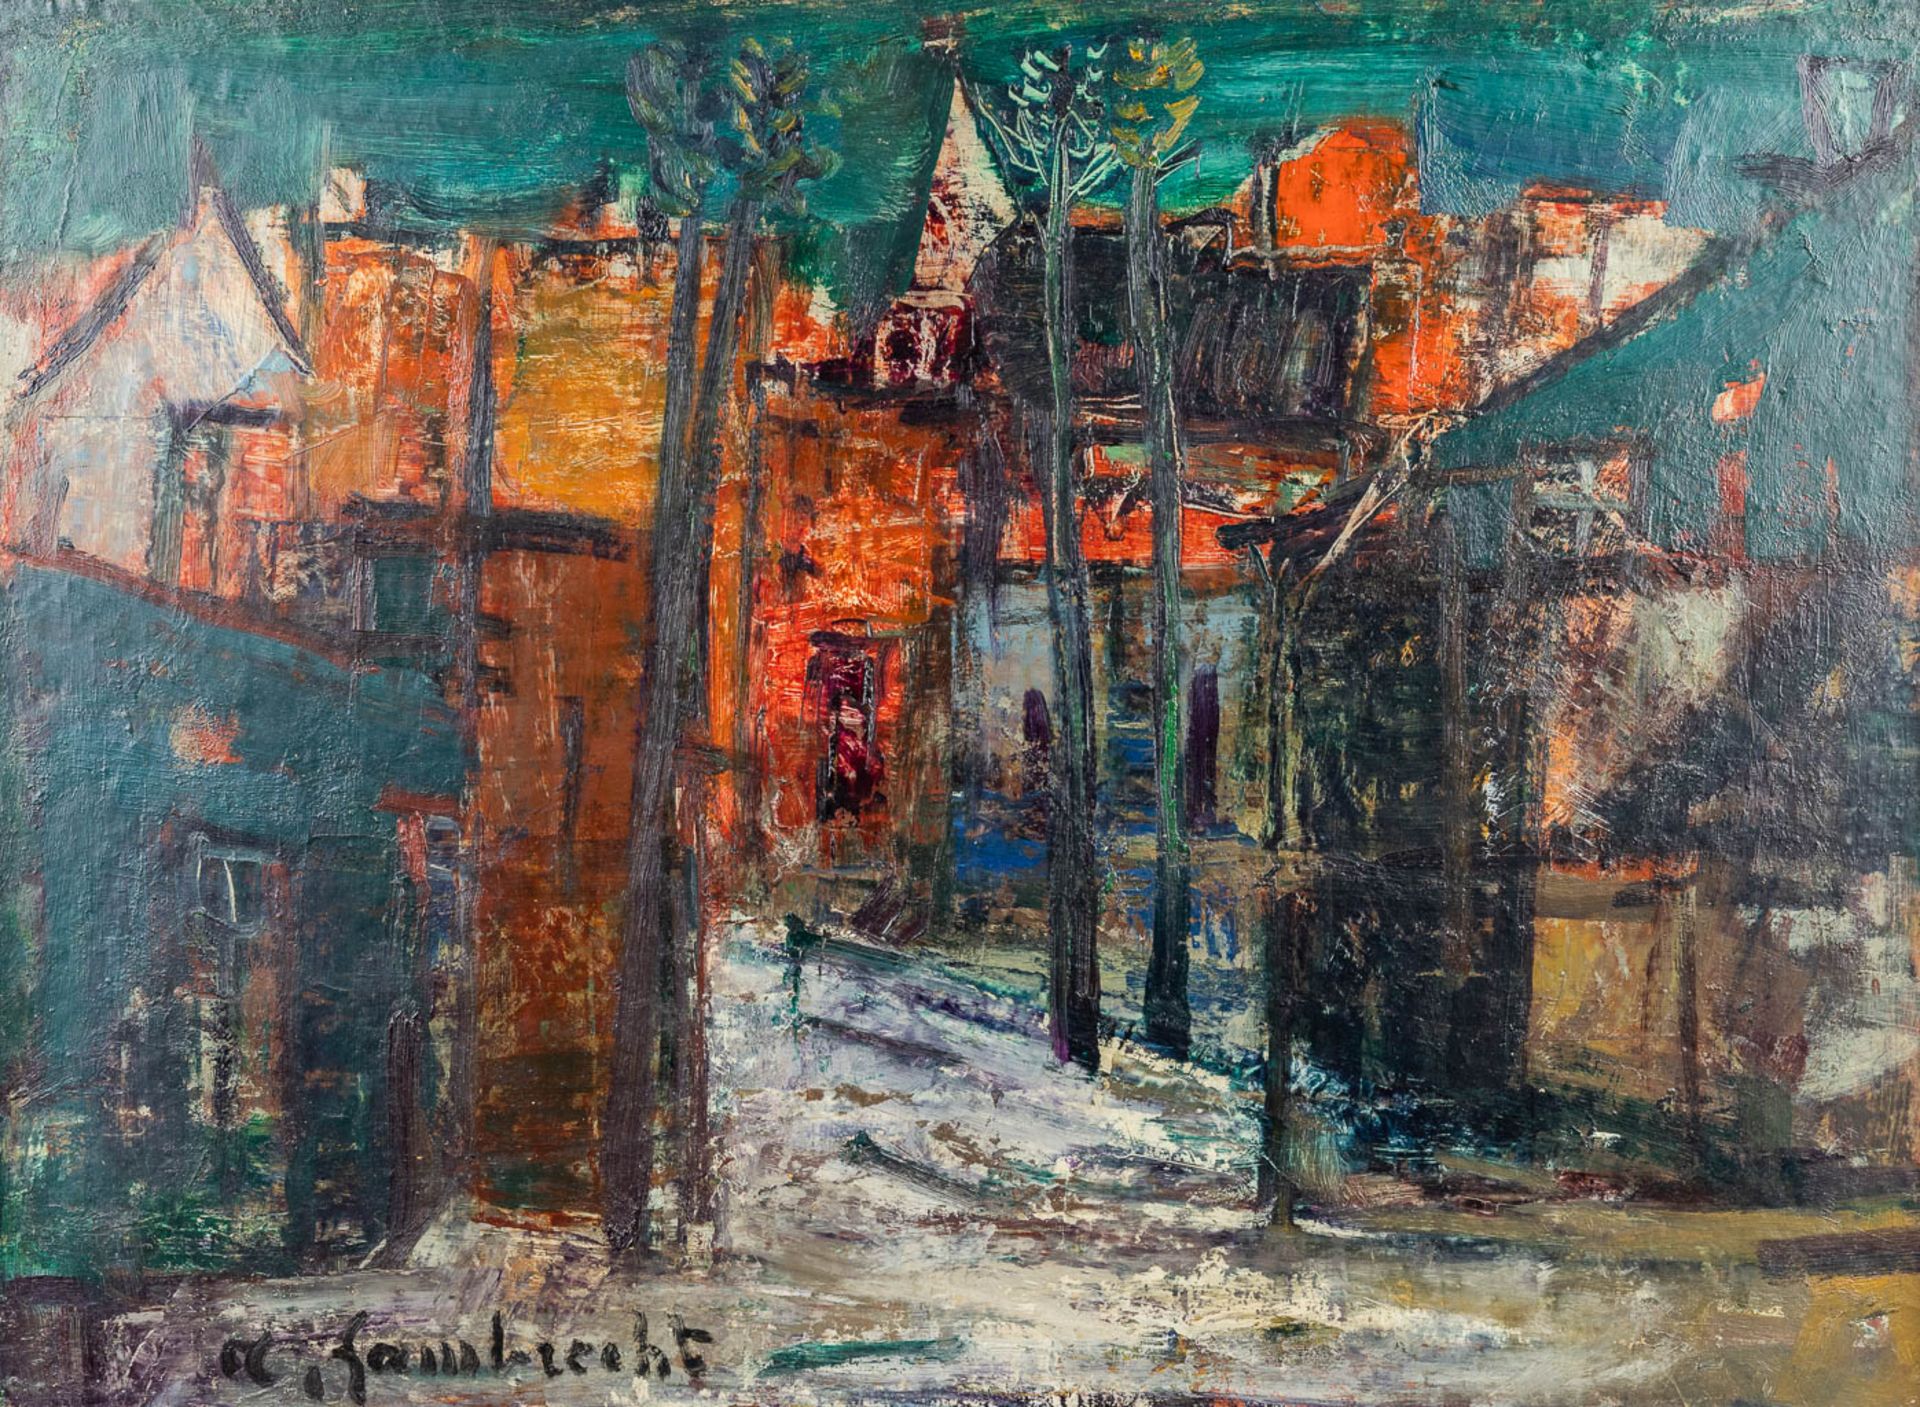 Arthur LAMBRECHT (1904-1983) 'Expressionist Village View' (76 x 56cm)